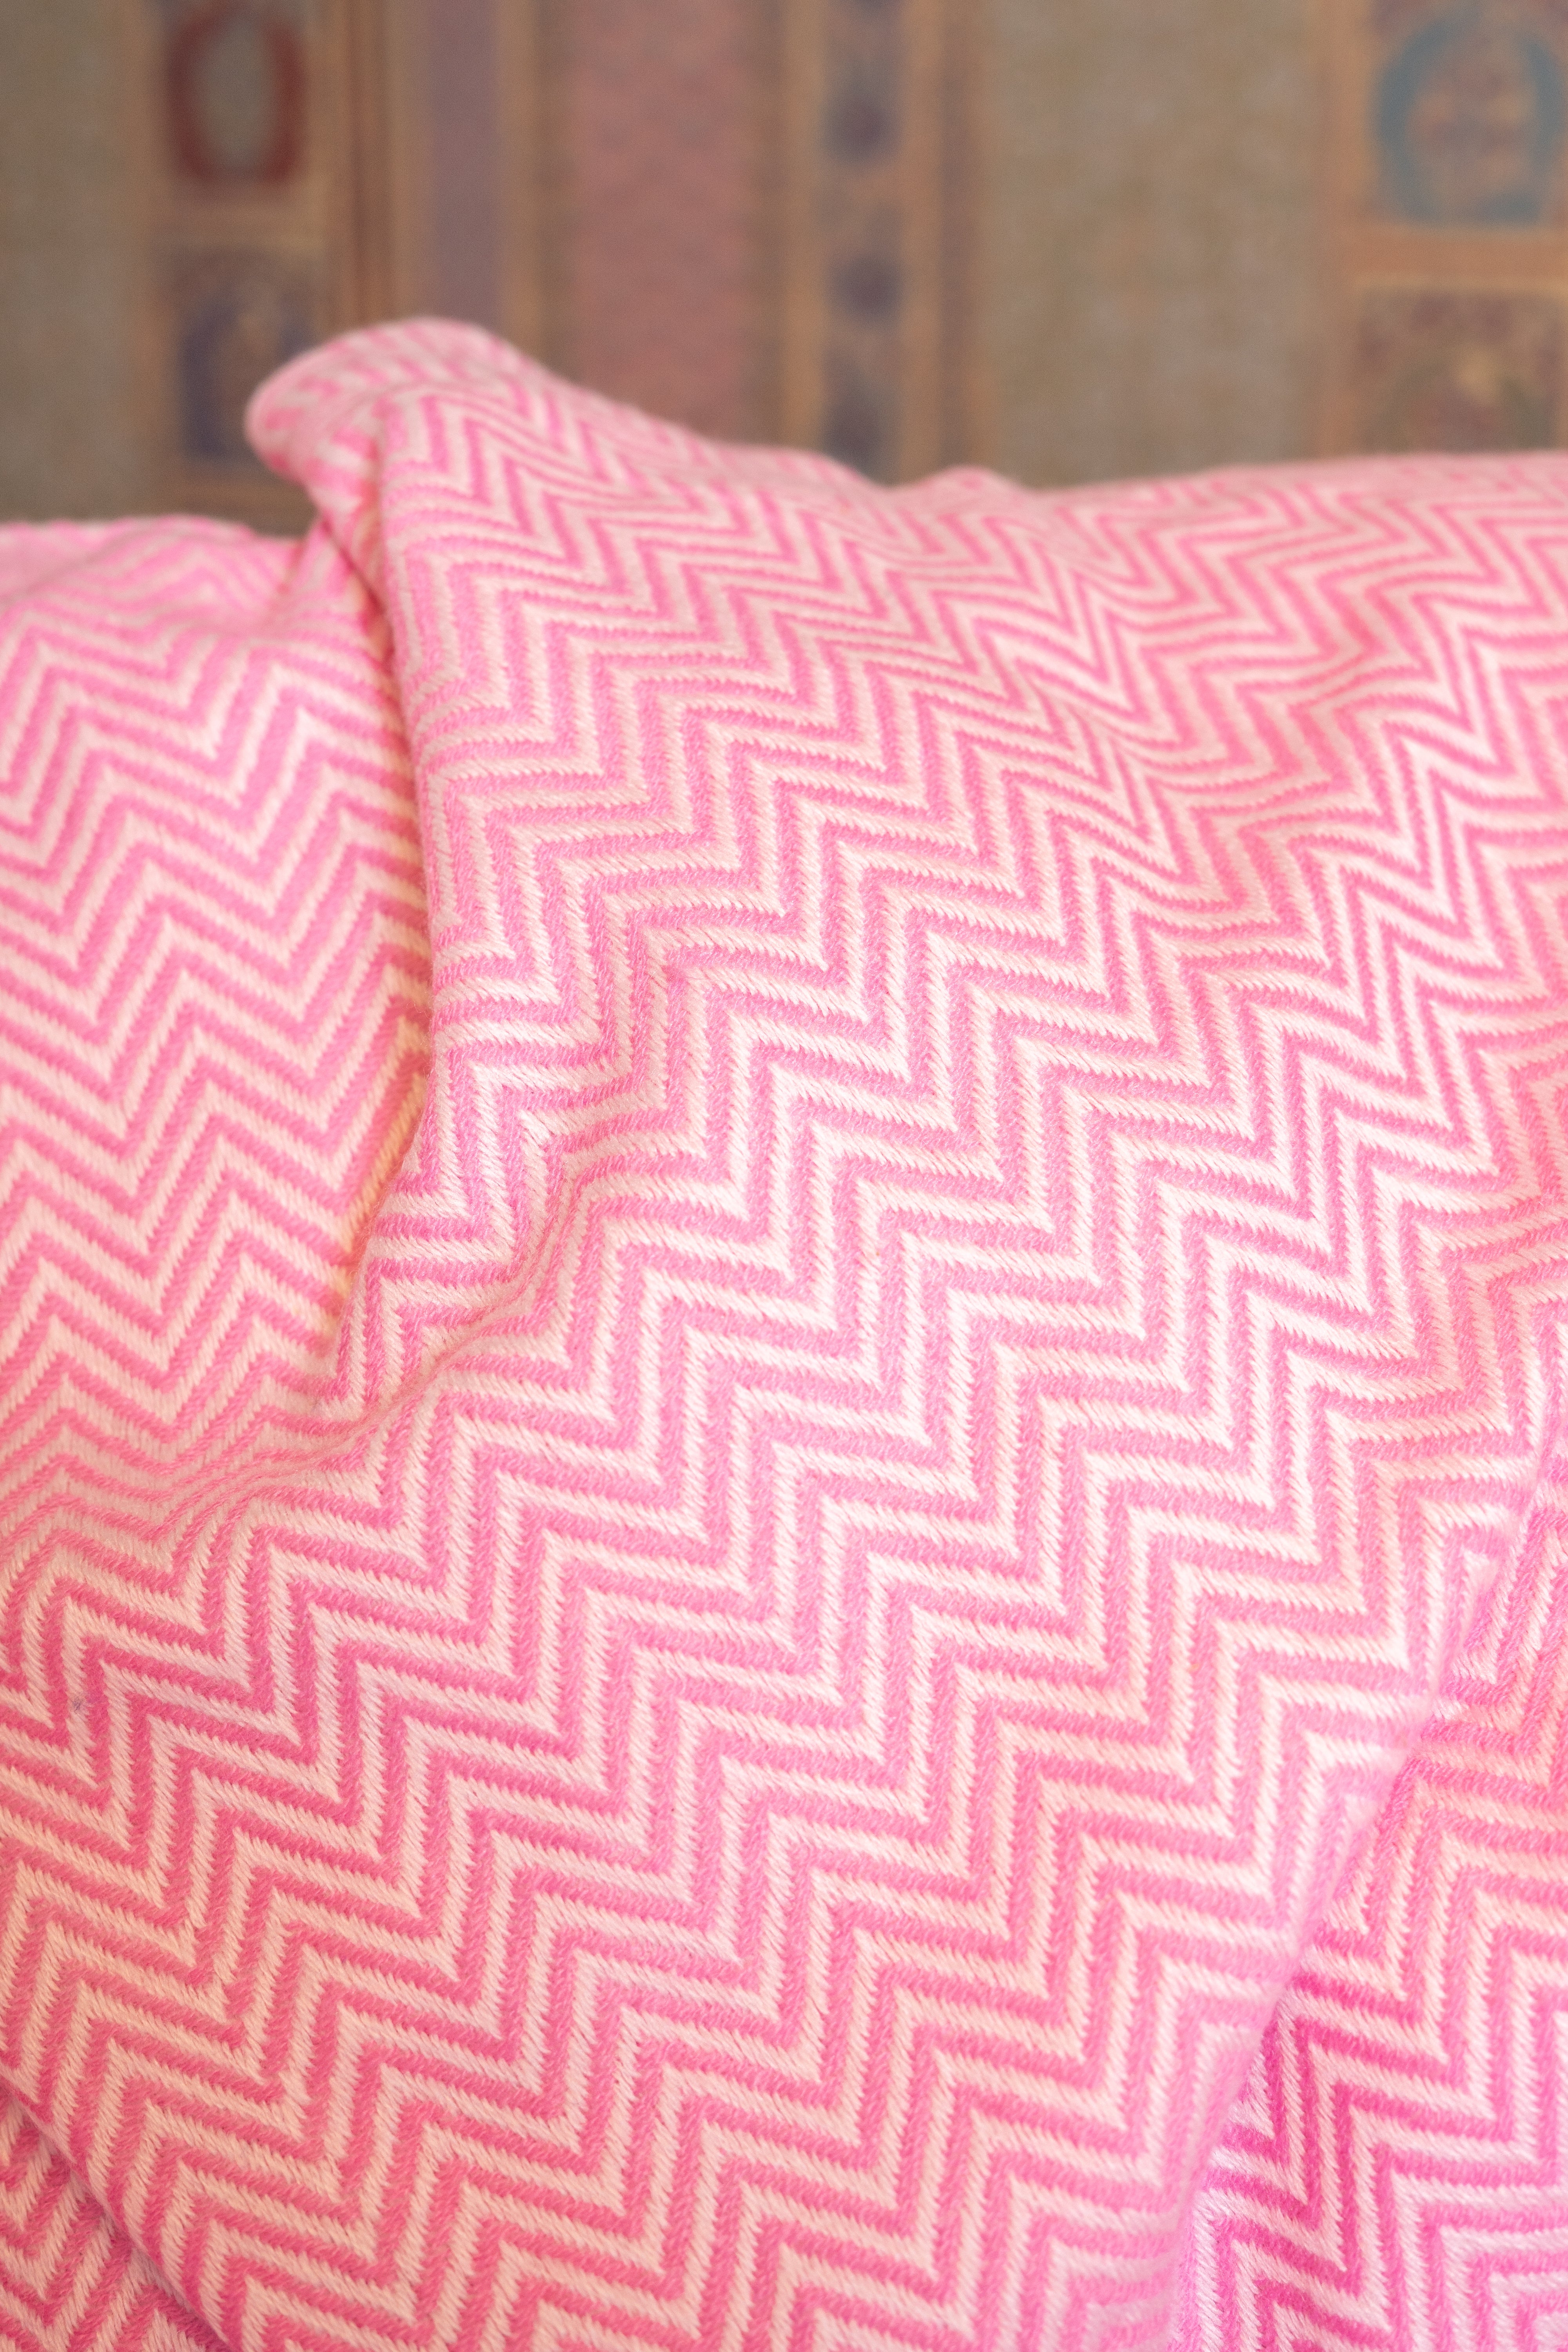 OMVAI Zig Zag Patterned Woven Throw Blanket / Comforter Flamboyant Fuchsia